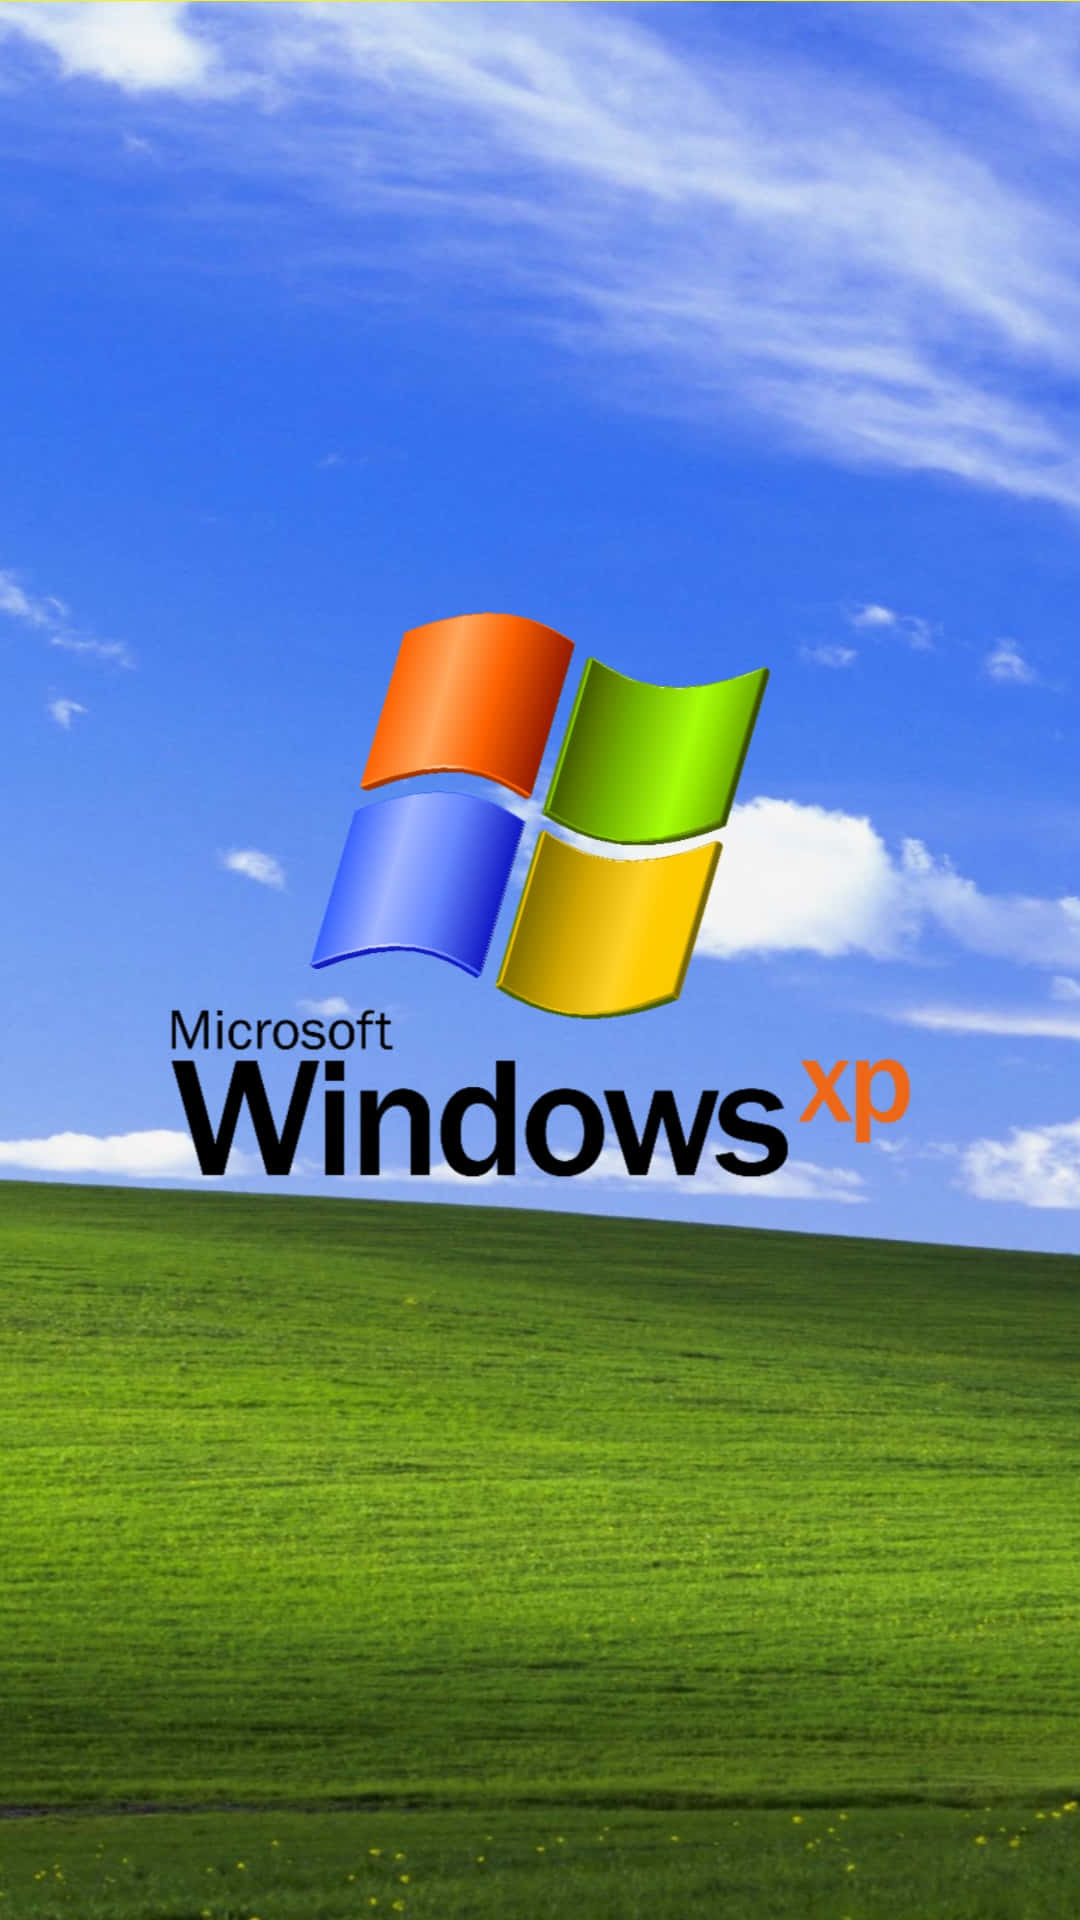 official windows xp logo